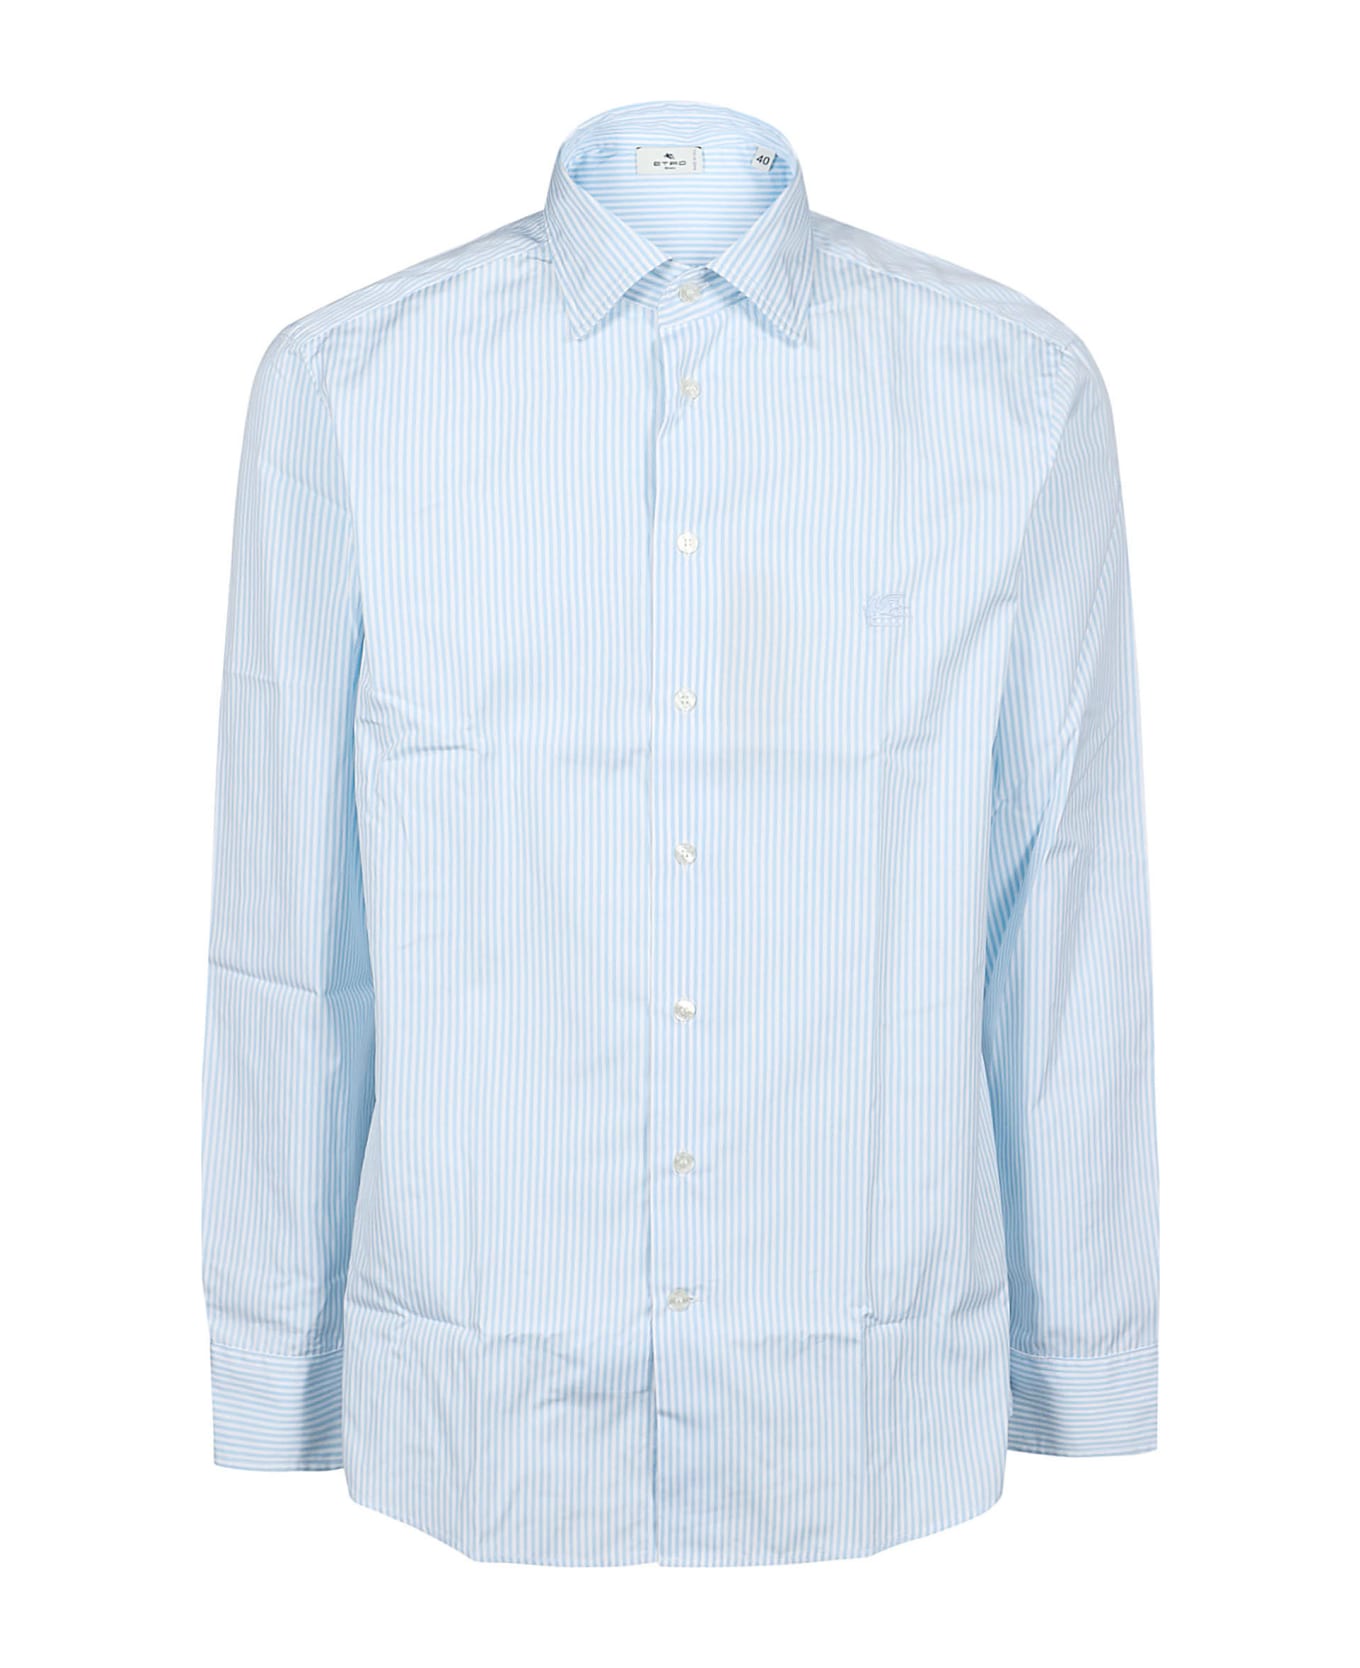 Etro Roma Long Sleeve Shirt - Bianco/azzurro